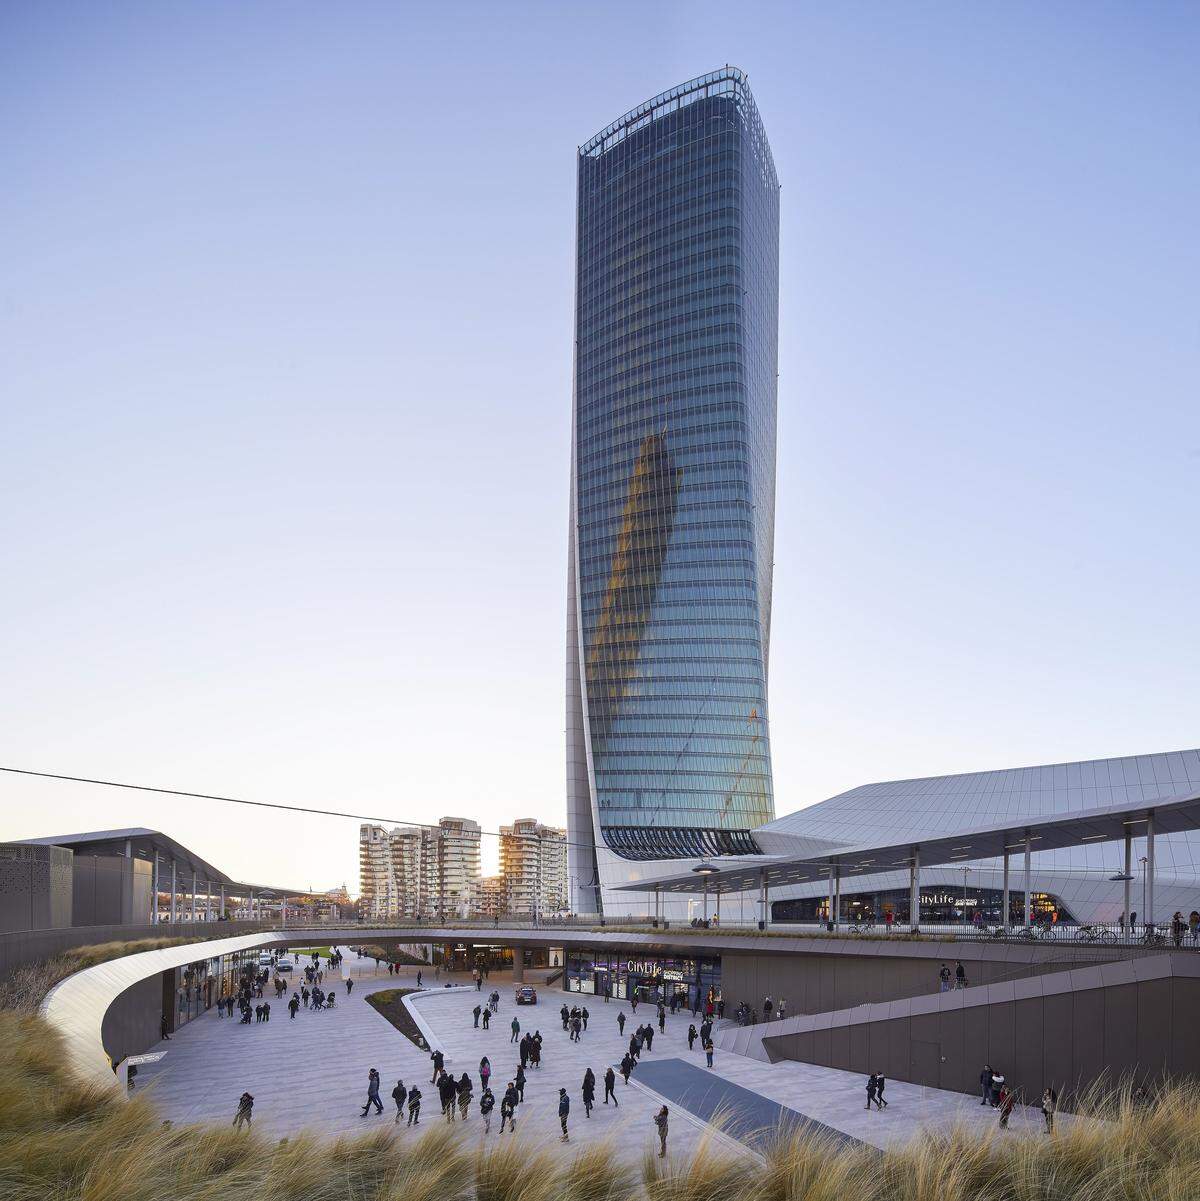 Auf den zweiten Platz wählte die Jury den von der 2016 verstorbenen Architektin Zaha Hadid entworfenen Generali Tower aus Mailand. Seine extravagante Form brachte ihm den Spitznamen "Lo Storto" (der Verdrehte) ein. Das Gebäude hat eine Fassade mit einem Doppelwandsystem, sowie einen raffinierten Sonnenschutz, der an heißen Tagen vor direkter Sonneneinstrahlung schützt. Der Wolkenkratzer hat dafür bereits die höchste Auszeichnung für Nachhaltigkeit, die LEED-Platinum-Zertifizierung der US Green Building Council, erhalten.